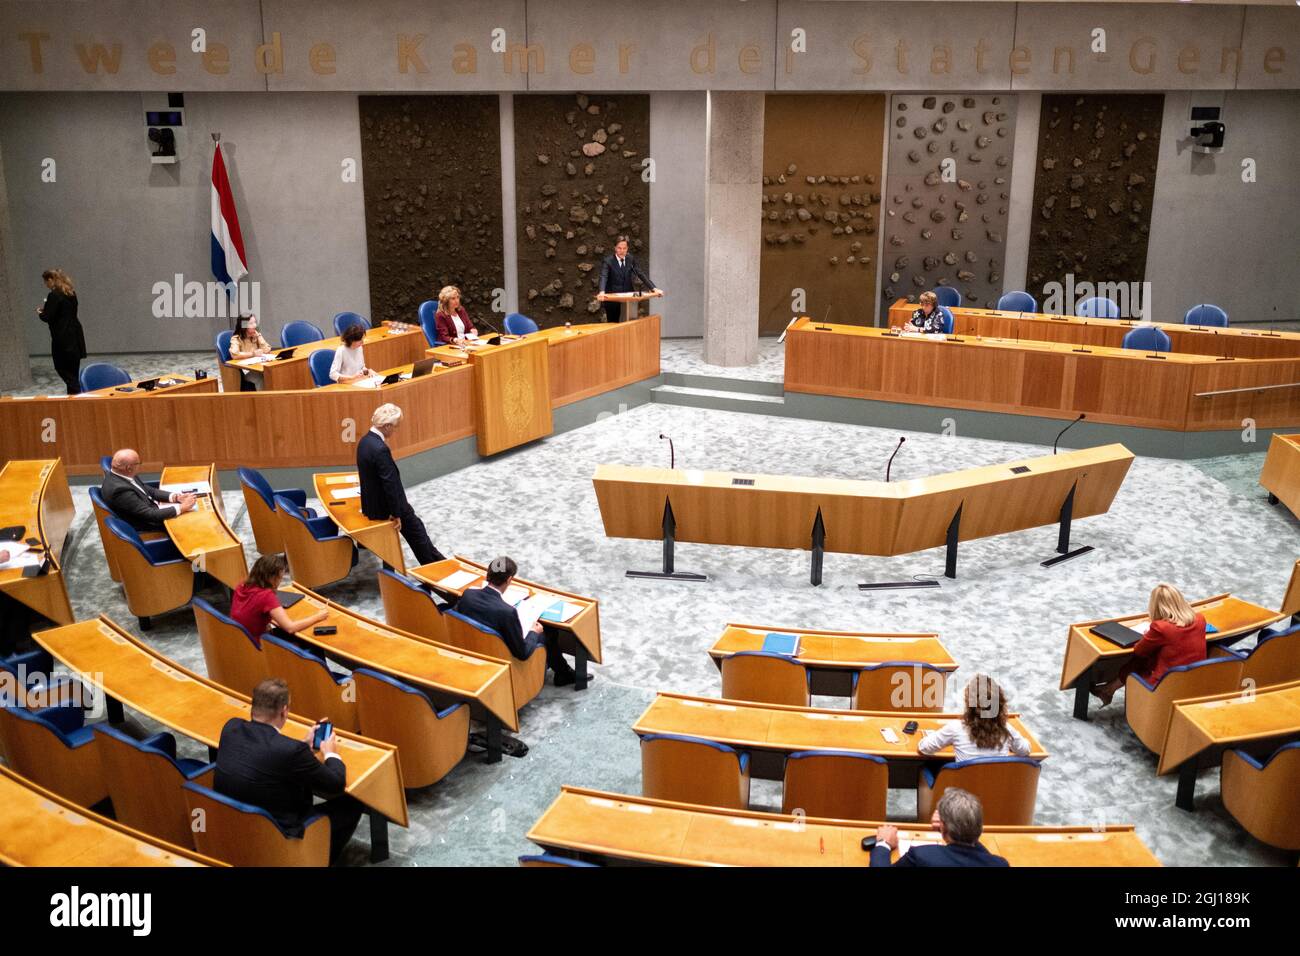 Pays-Bas, La Haye le 07/09/2021. Au parlement des Pays-Bas, debat suite au rapport finale de l'informatrice pour la formation du nouveau gouvernement. Stock Photo